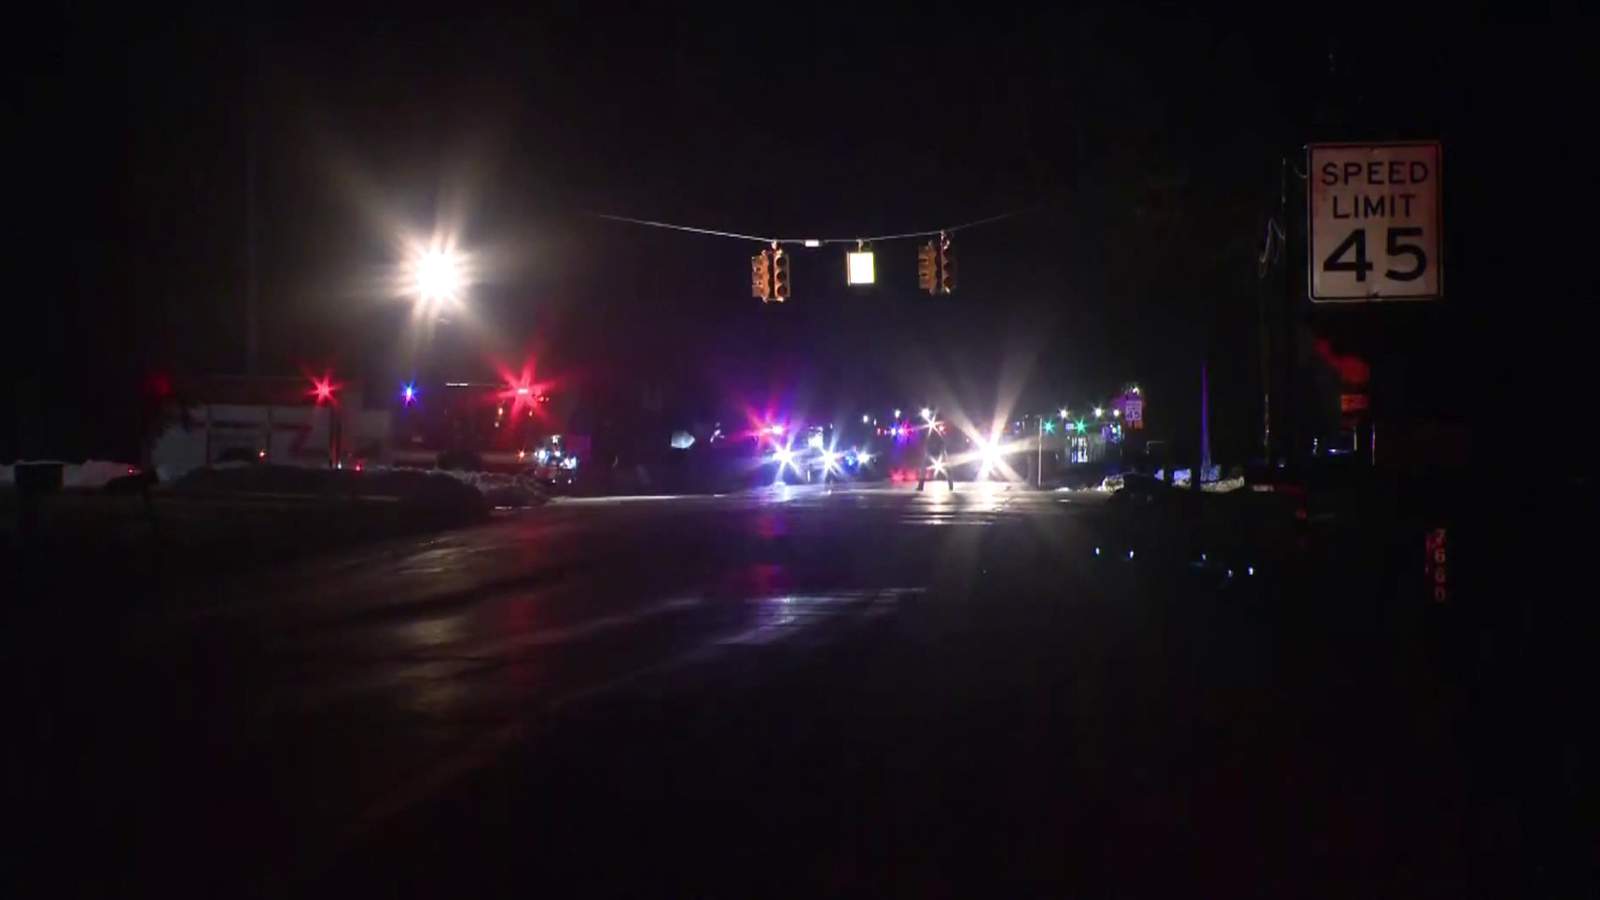 Teen killed, 4 others hurt in Van Buren Township head-on crash, police say